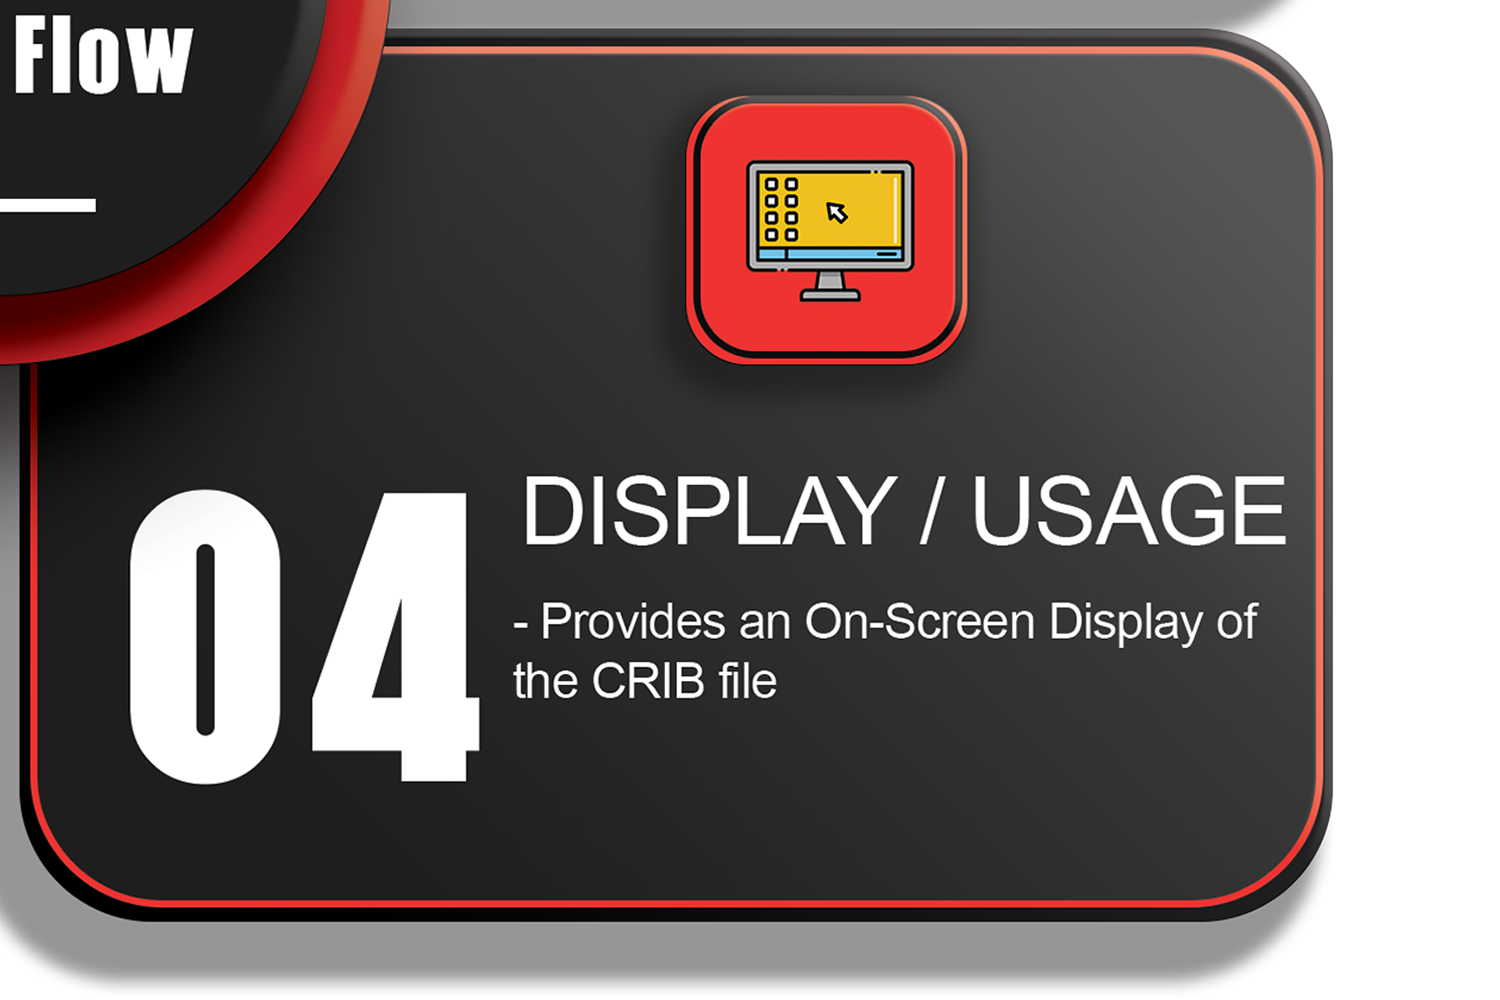 Display / Usage